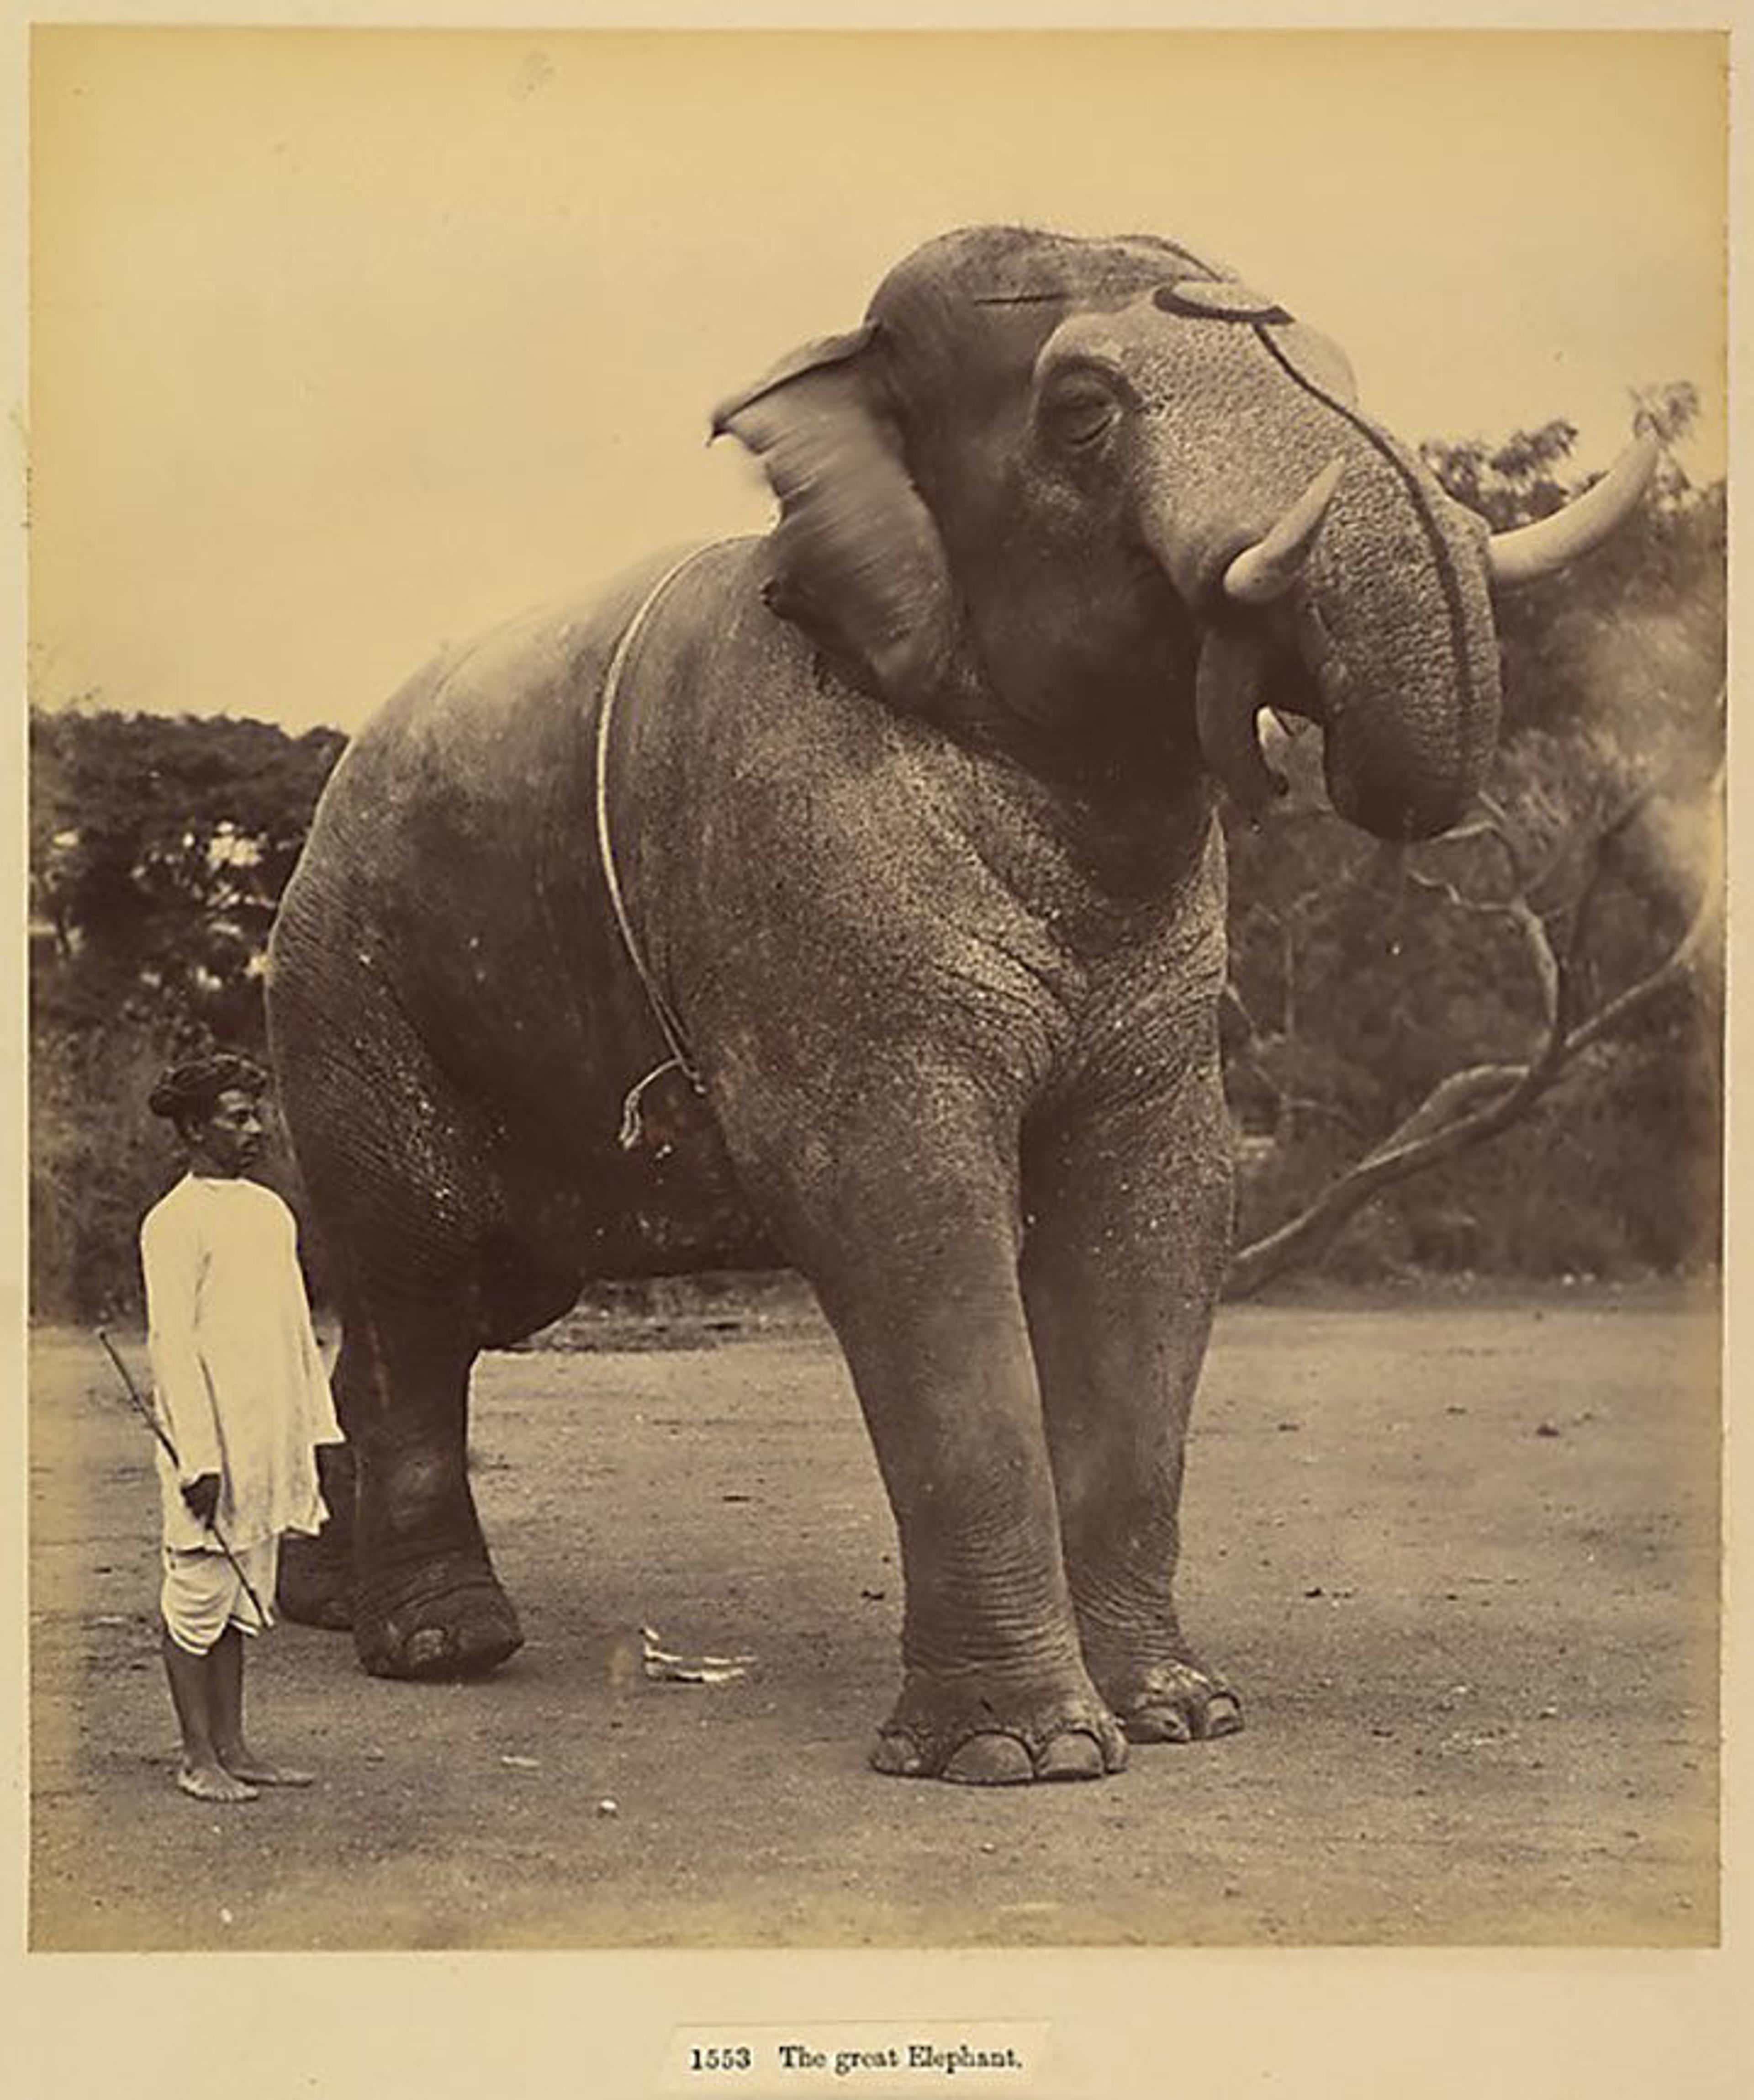 Albumen silver print photograph of a great elephant, circa 1885